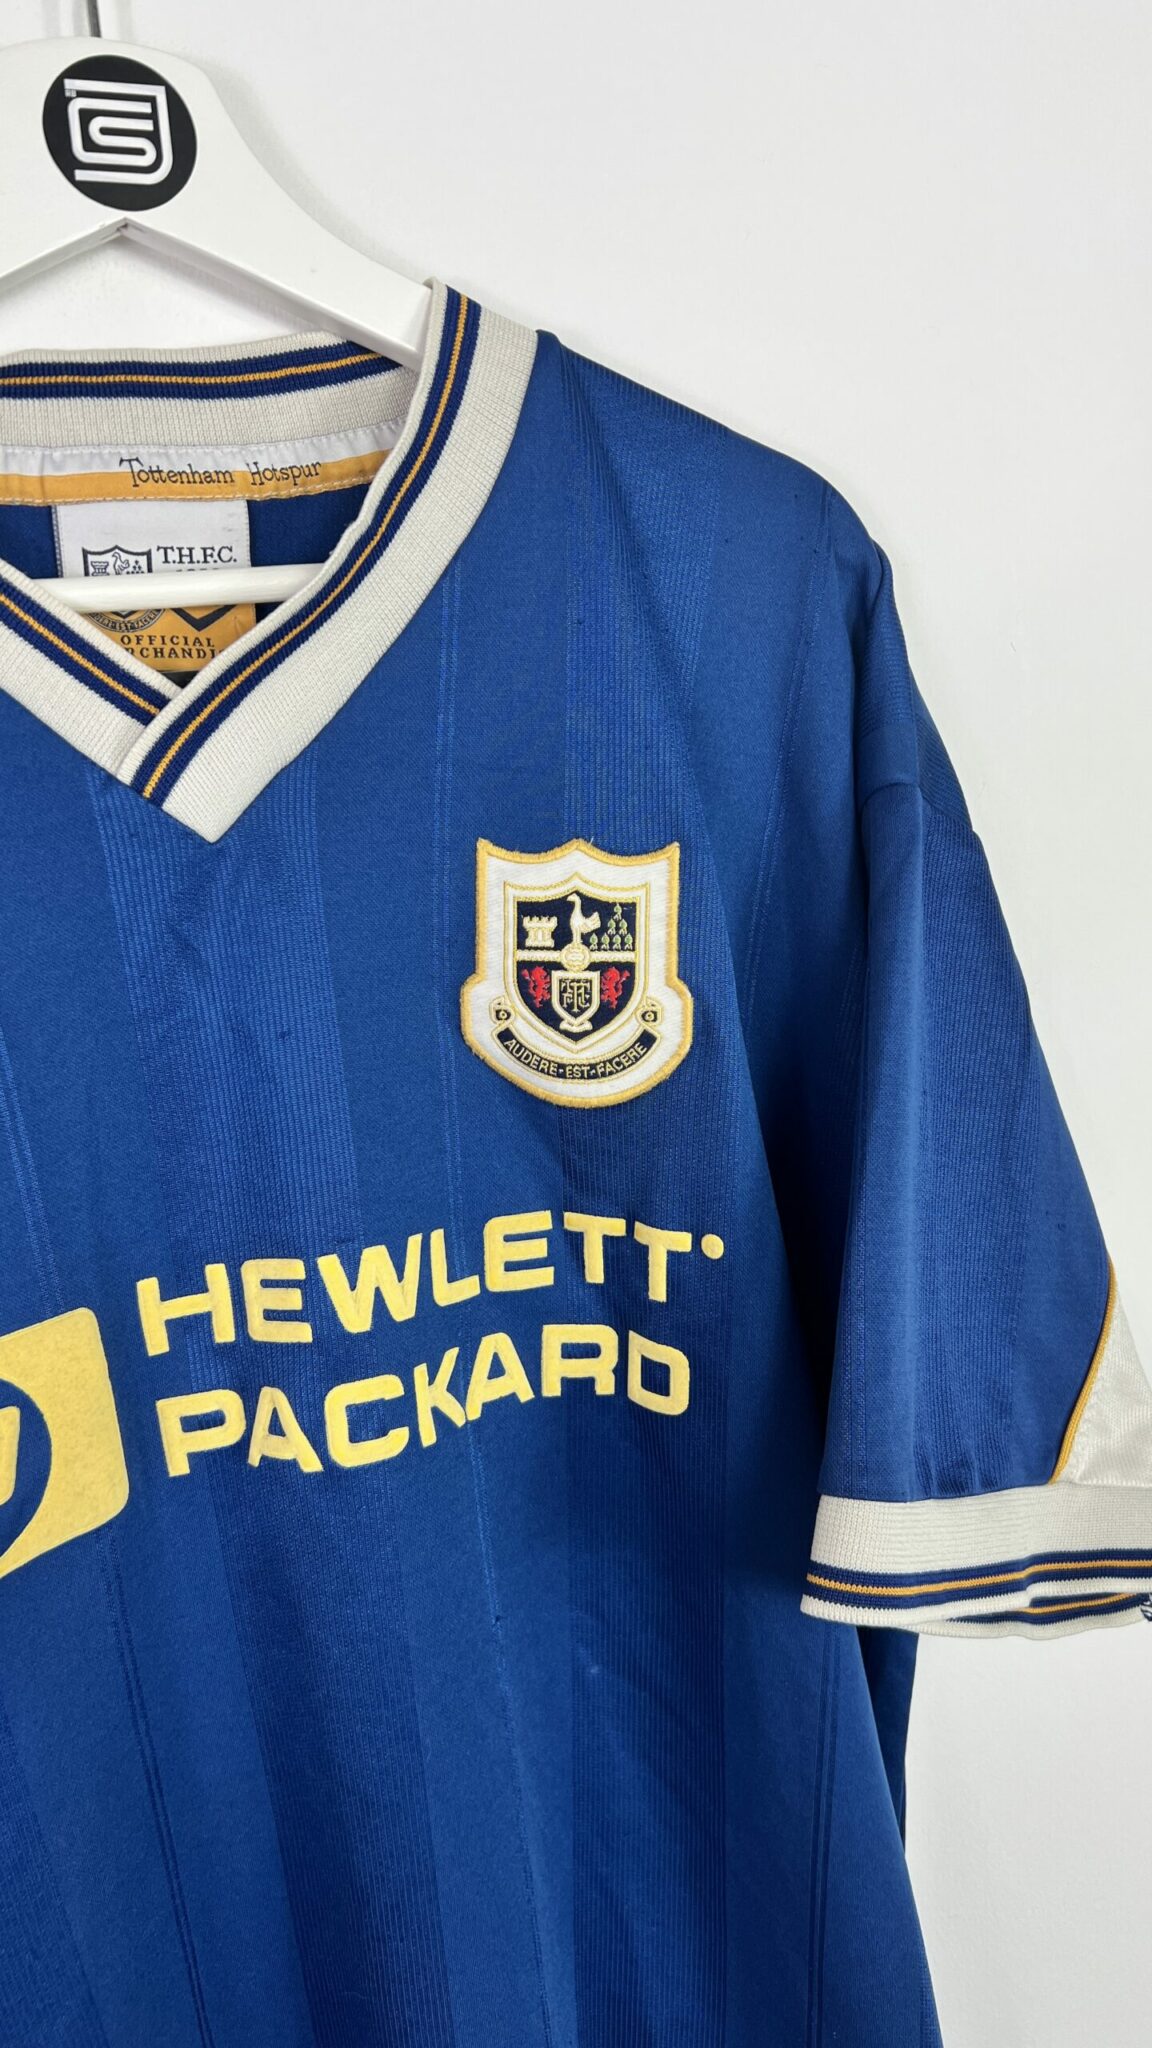 1995-97 Tottenham Hotspur Away Football Shirt (XXL) - Football